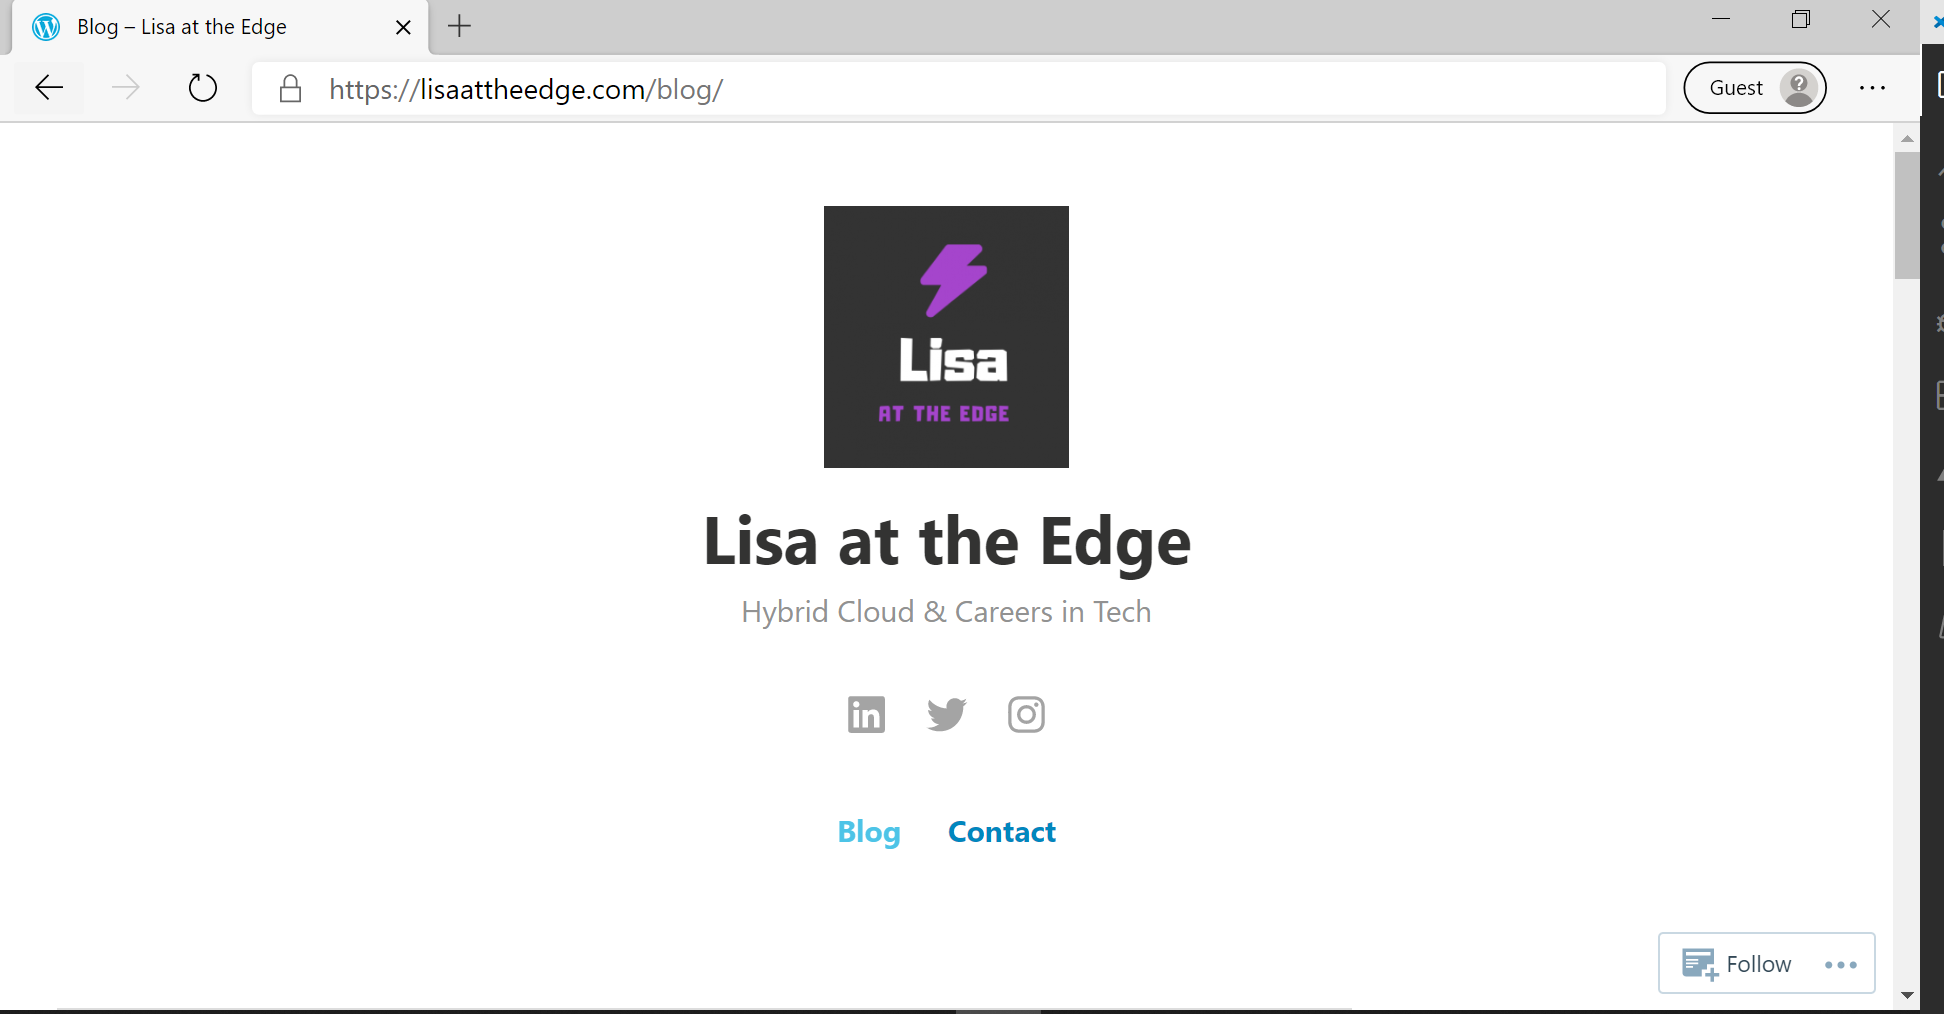 Lisa at the Edge